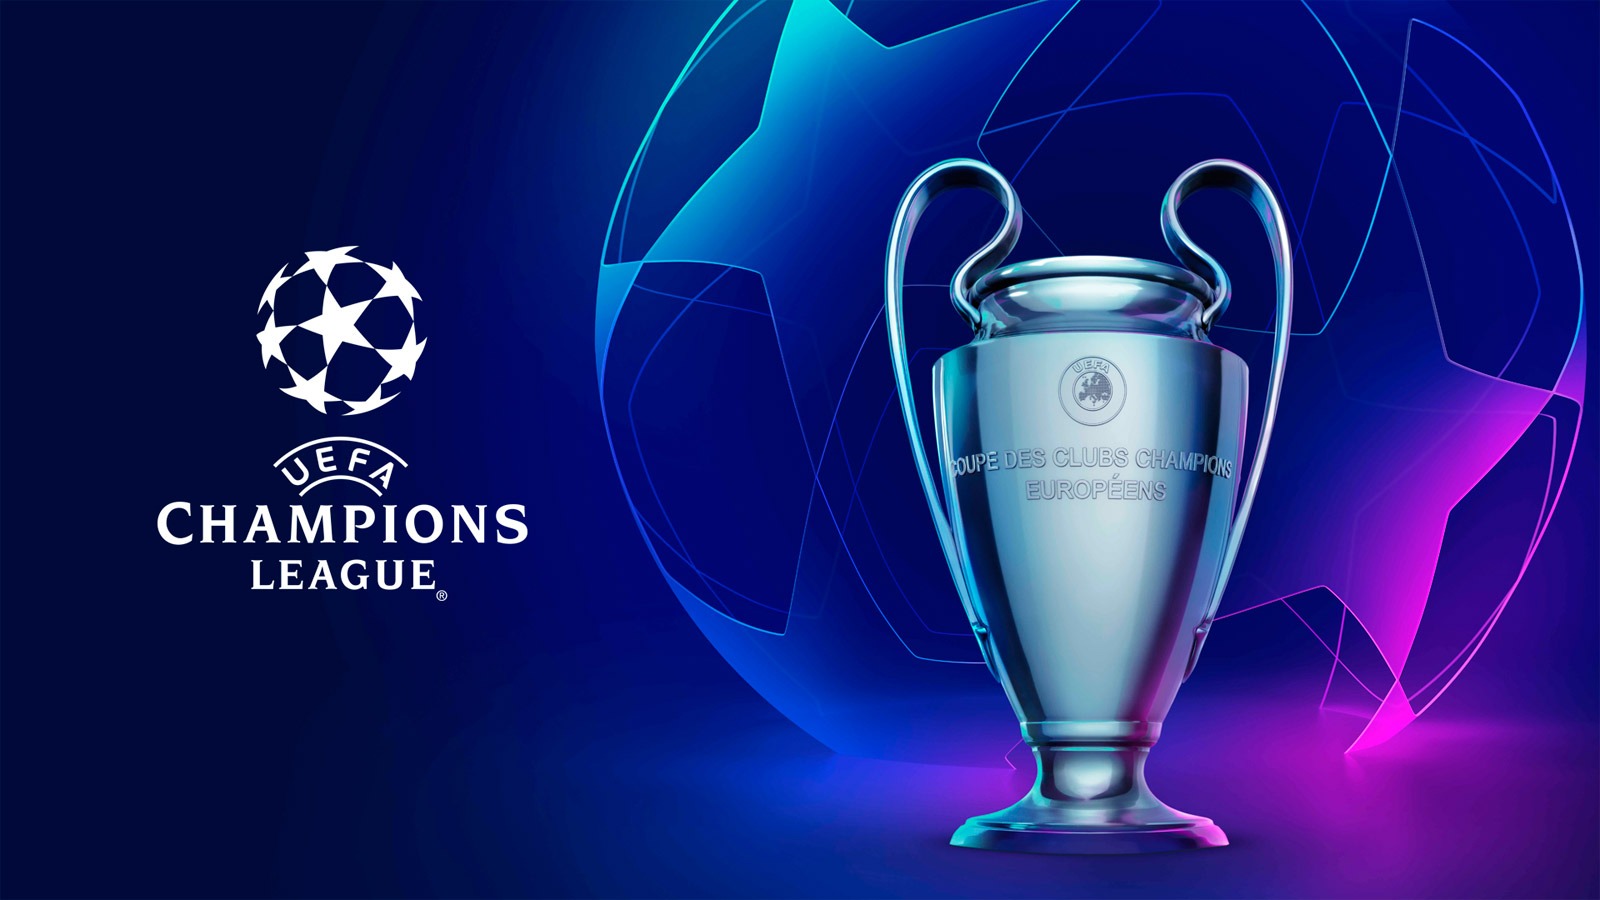 Champions League 2019